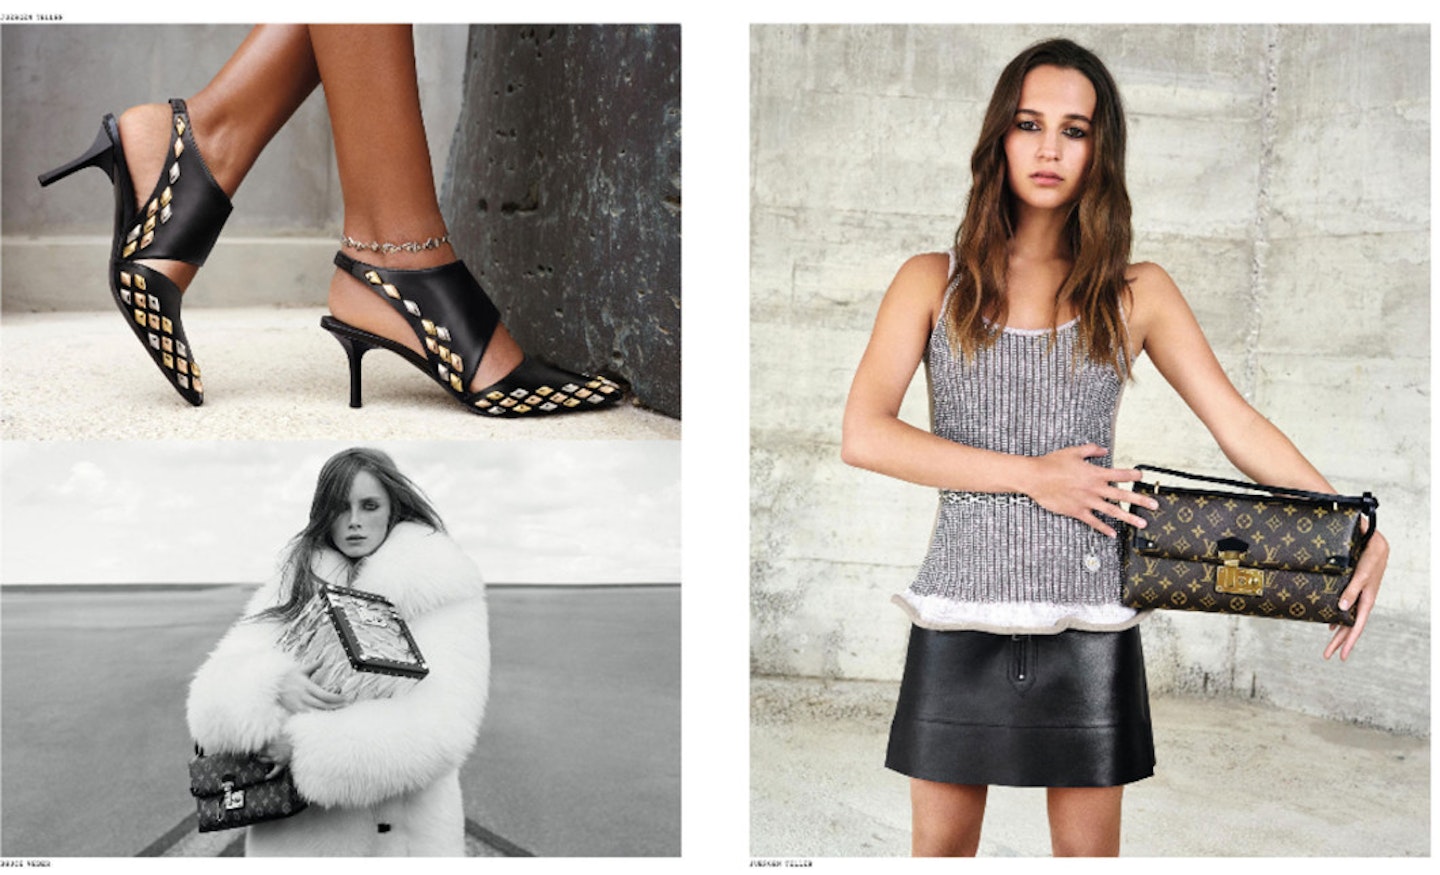 Alicia Vikander Louis Vuitton New Classics Campaign